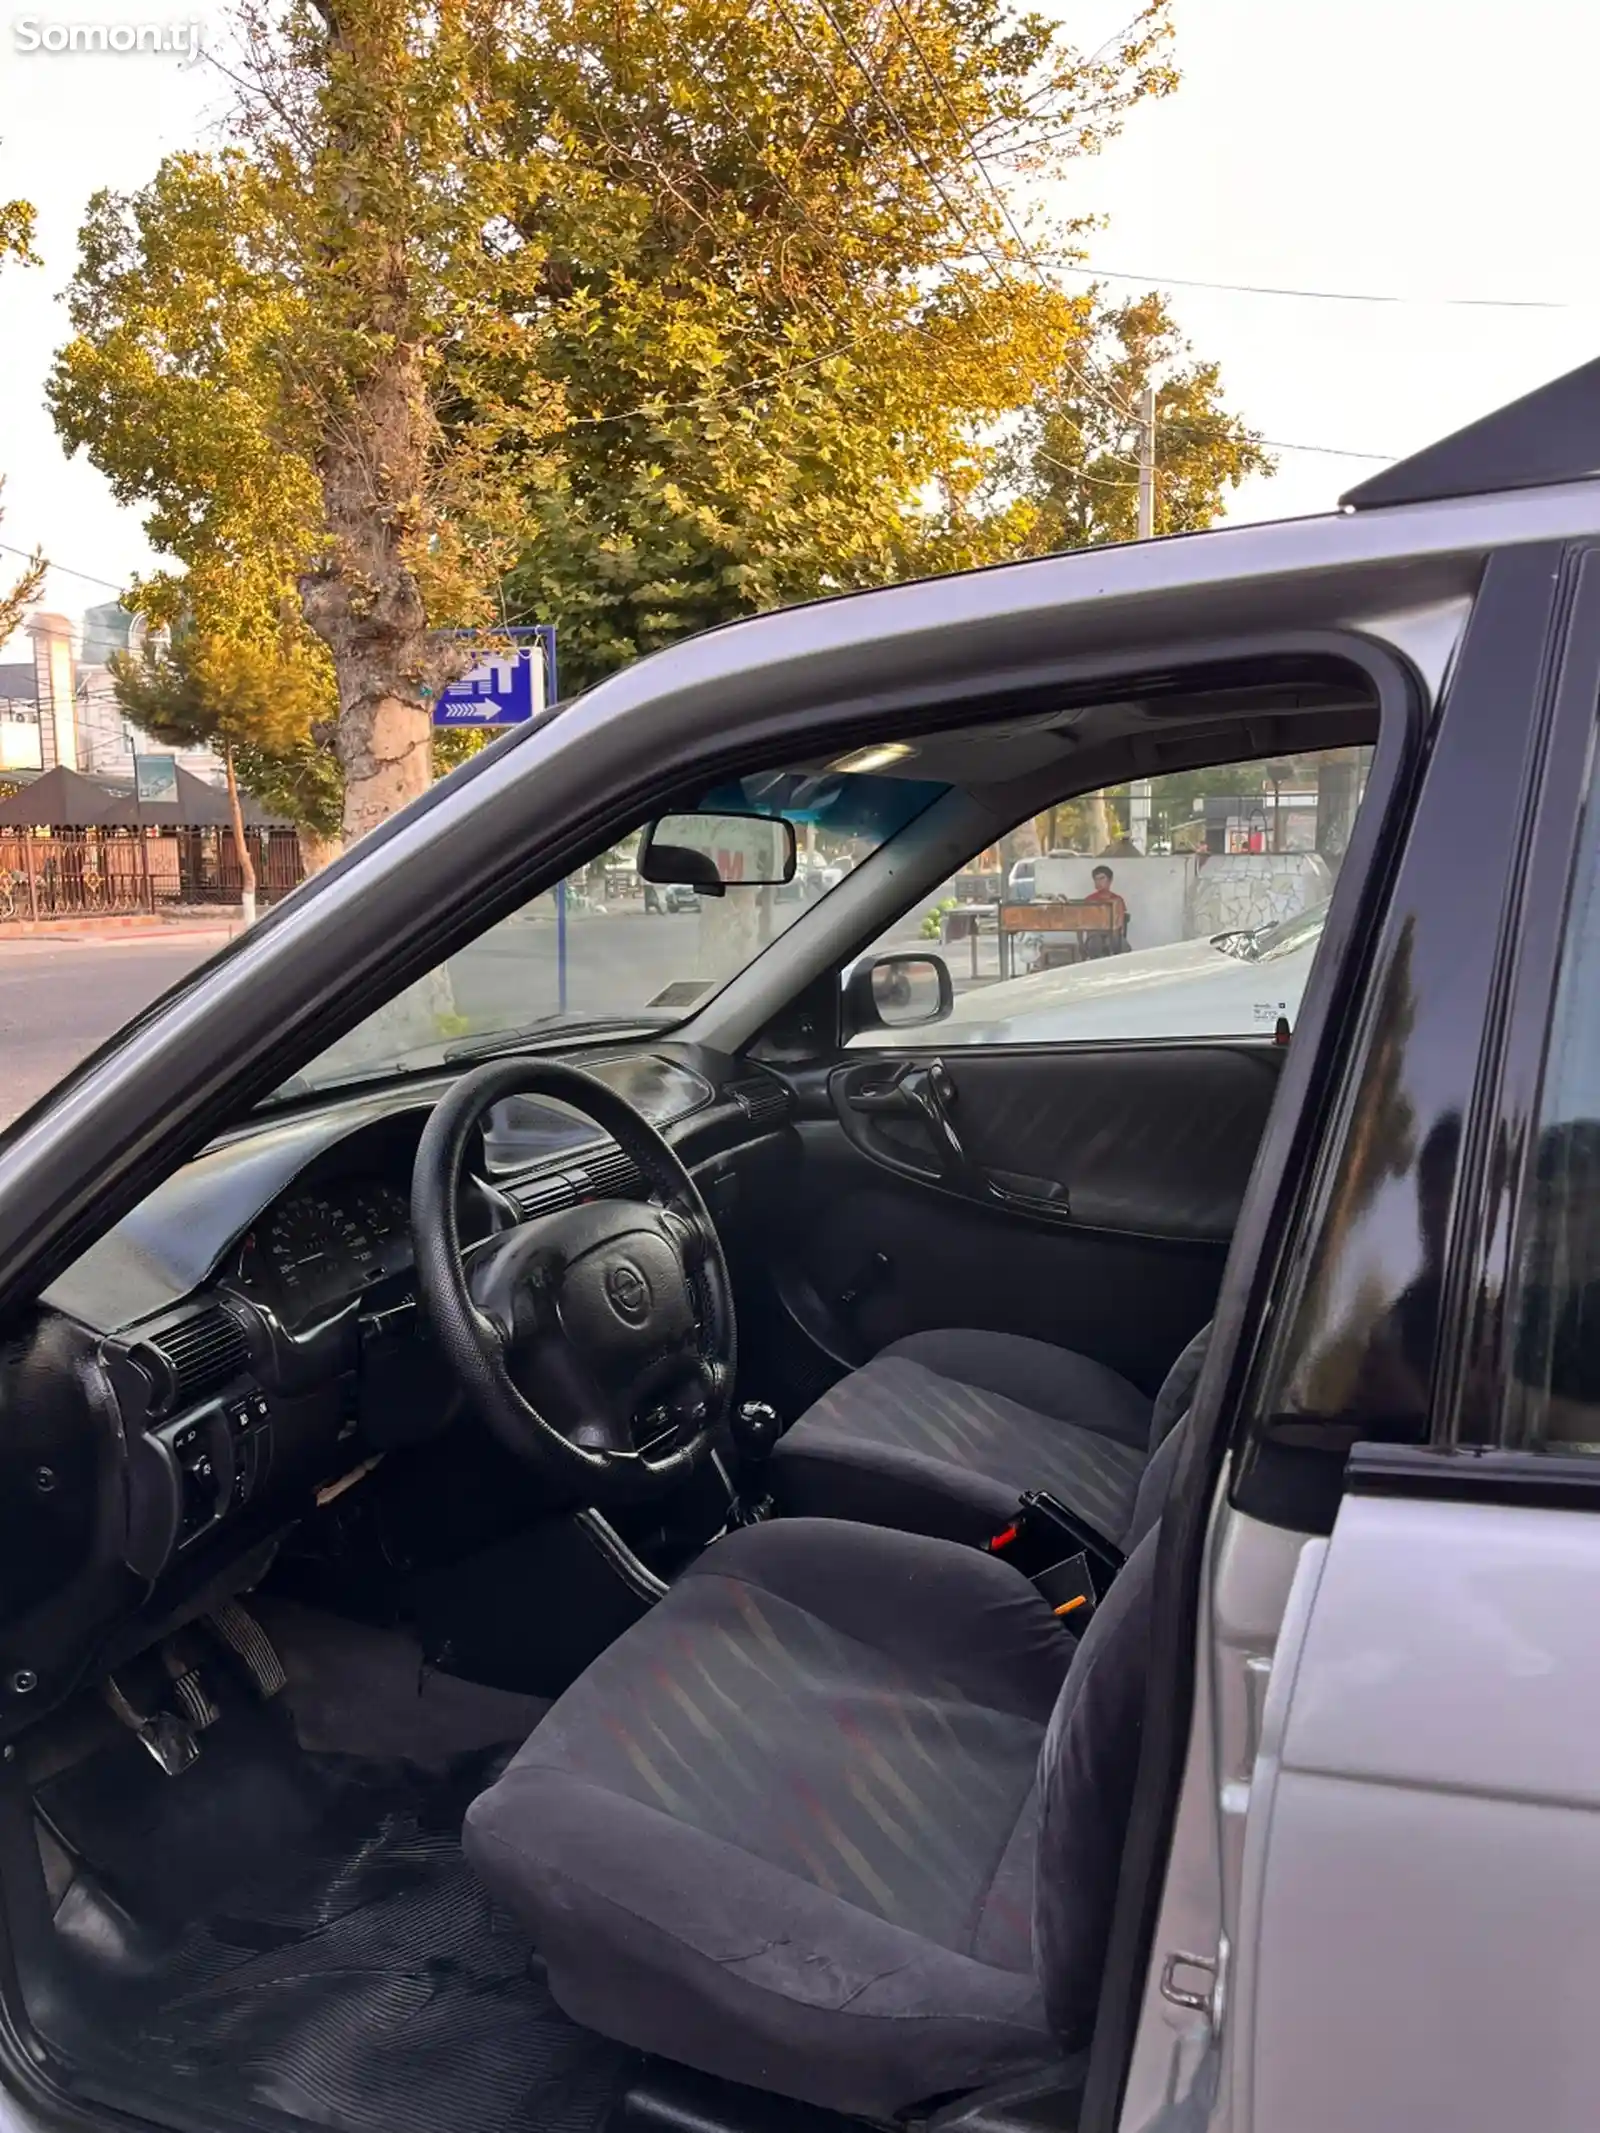 Opel Astra F, 1997-13